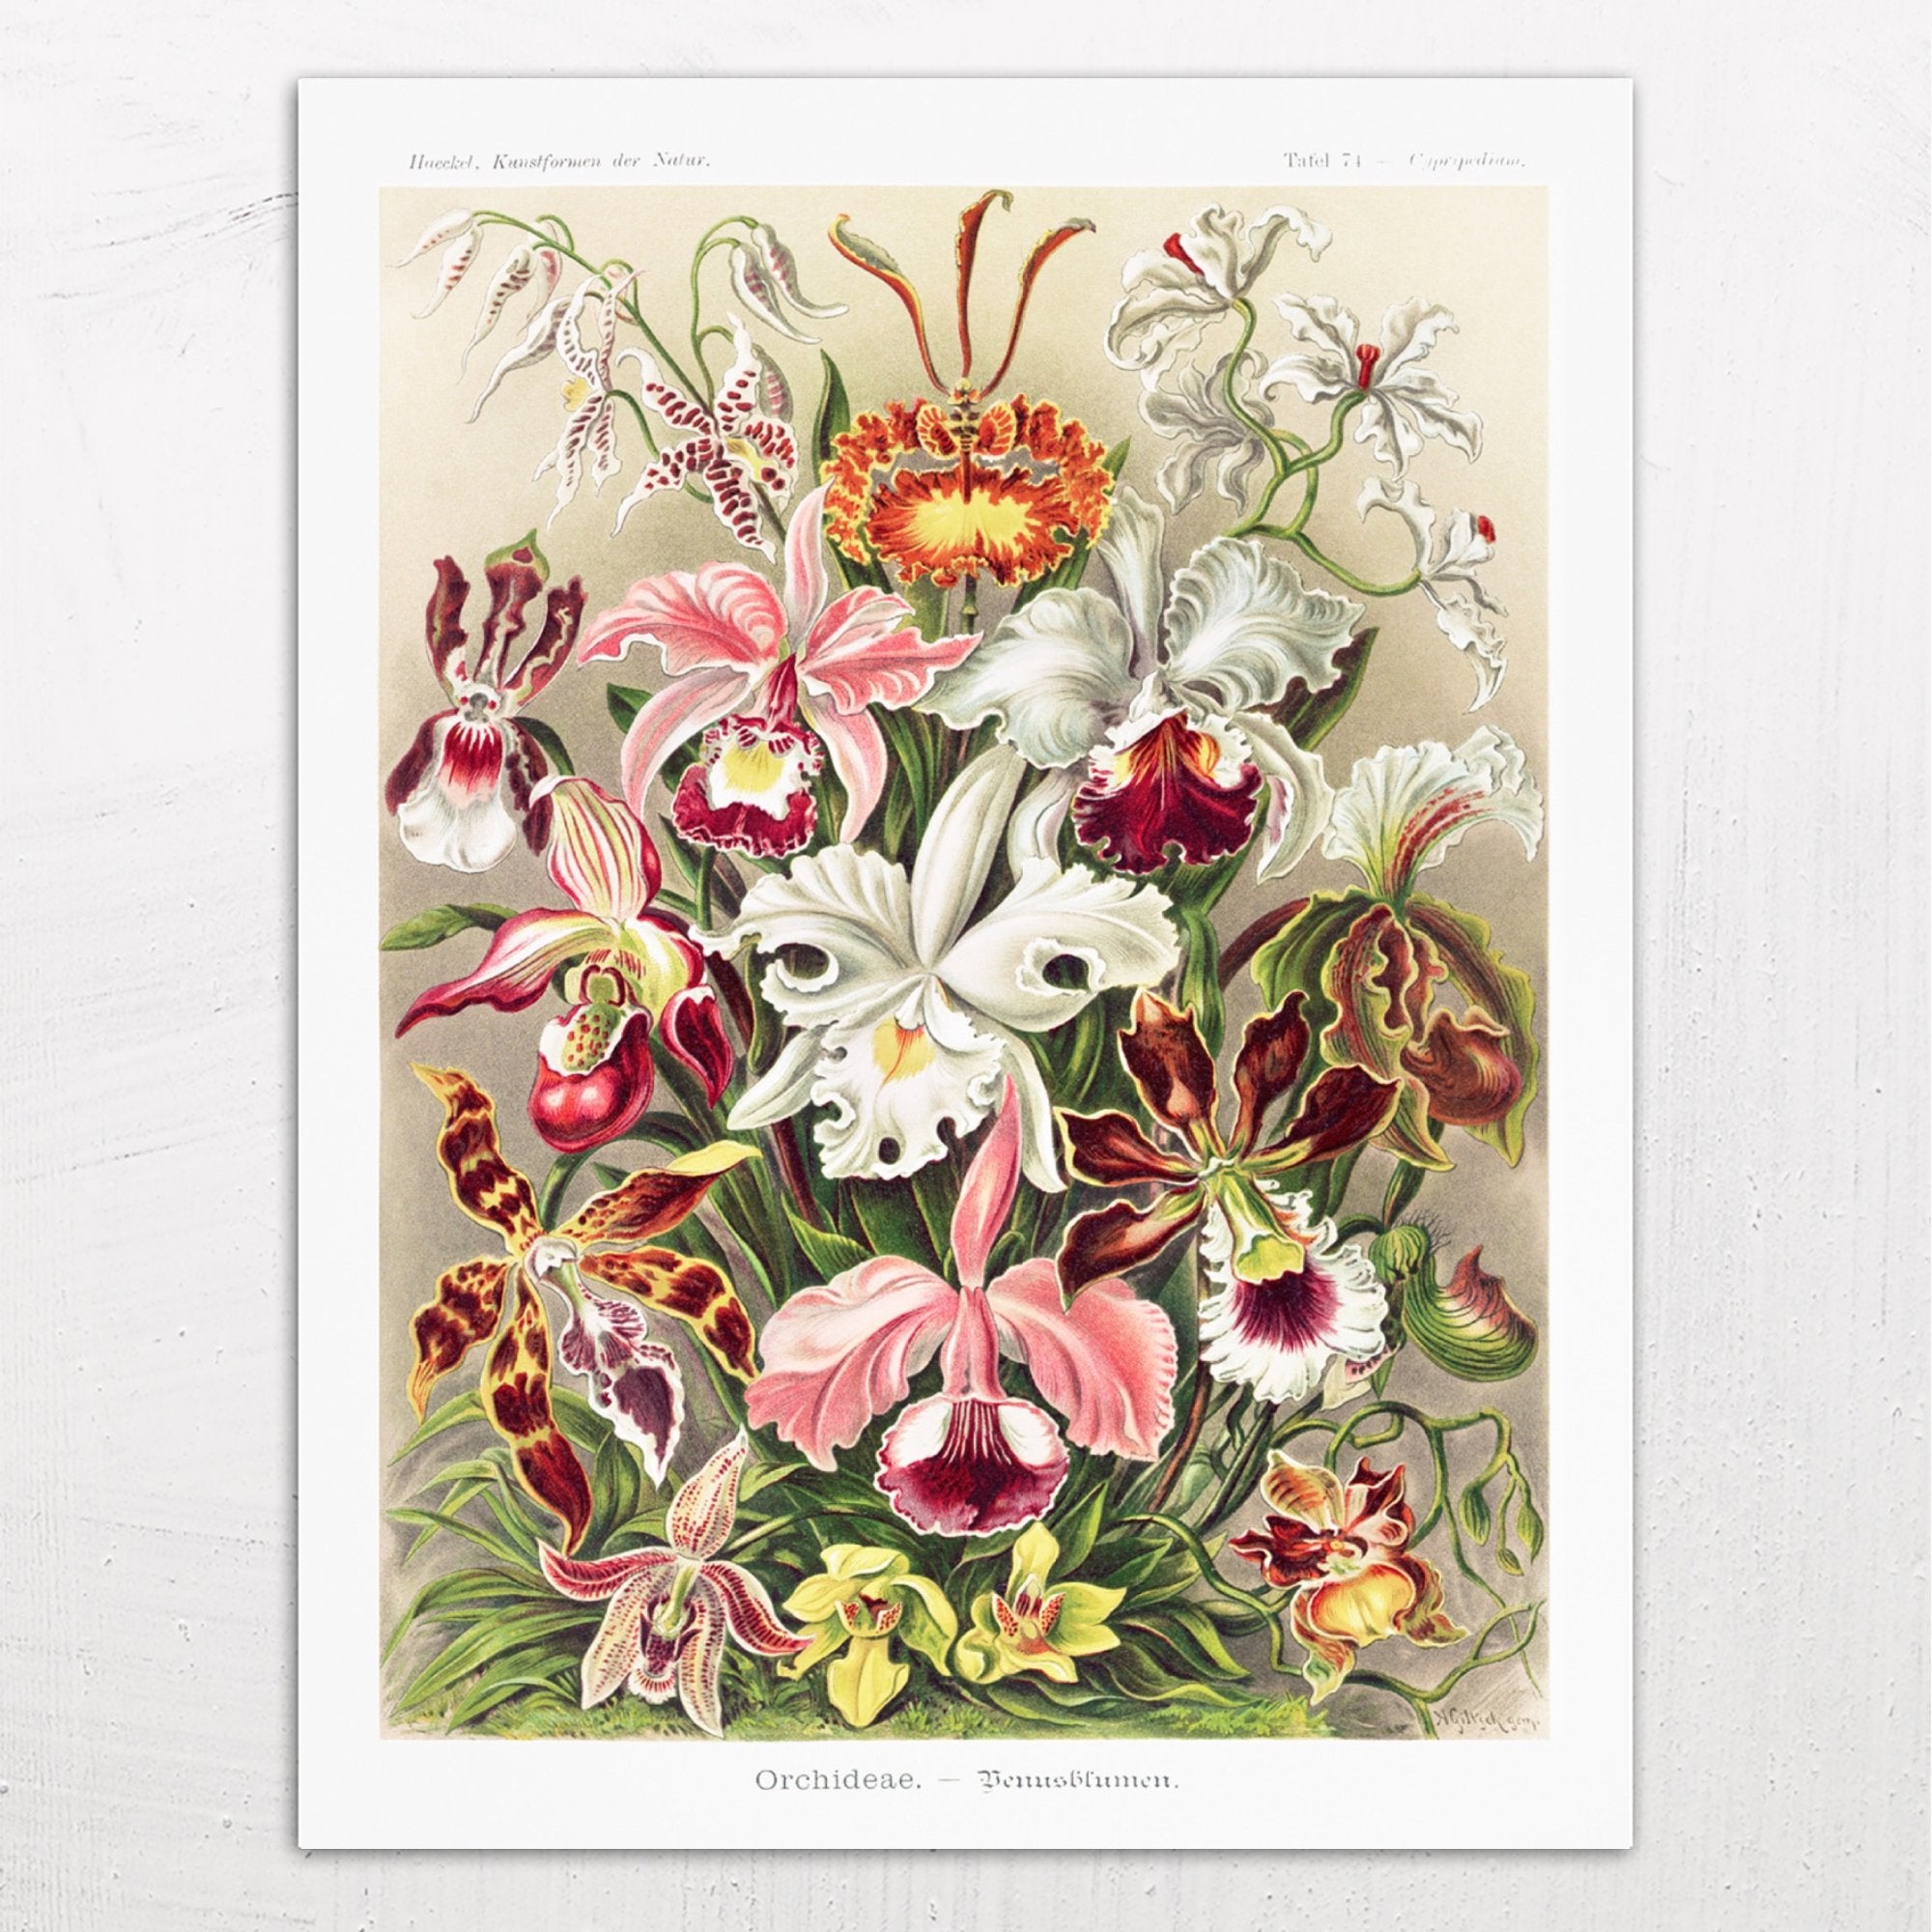 Orchideae. - Denusblumen / A. Giltsch, gem (Orchids) by Ernst Haeckel (1904)